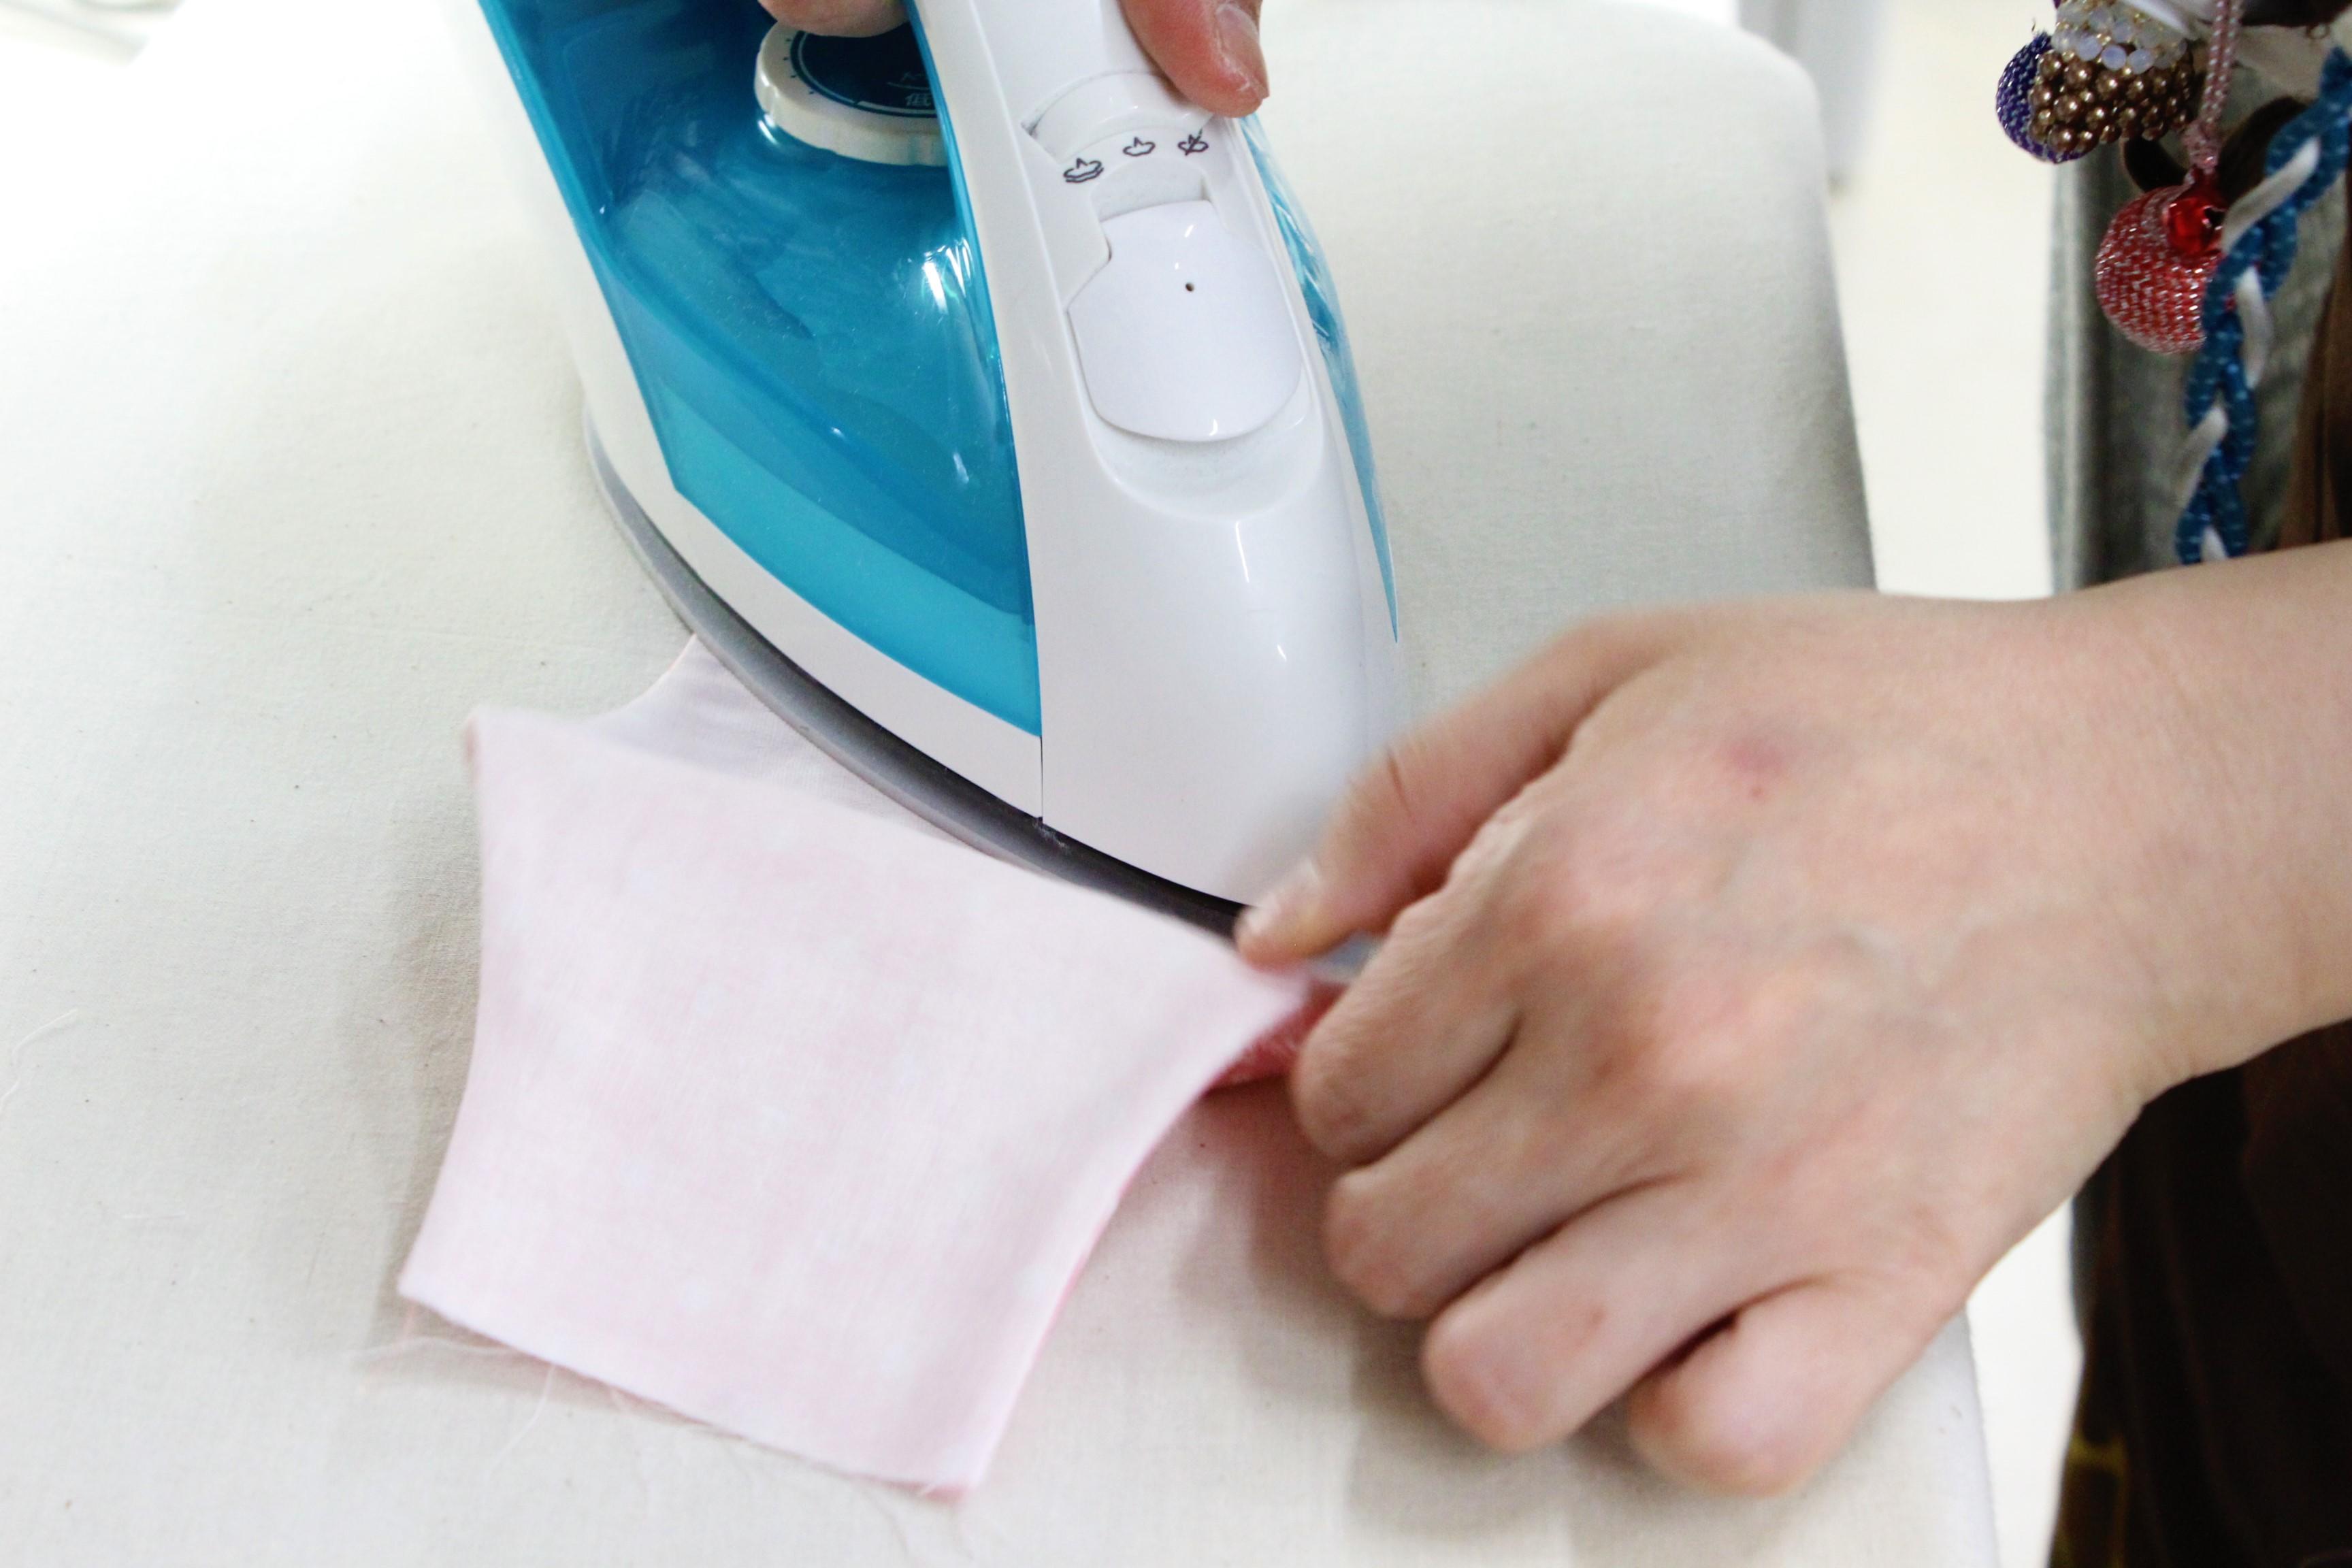 ⑦縫い合わせた布をひっくり返して表を出し、アイロンをかけ形を整える。